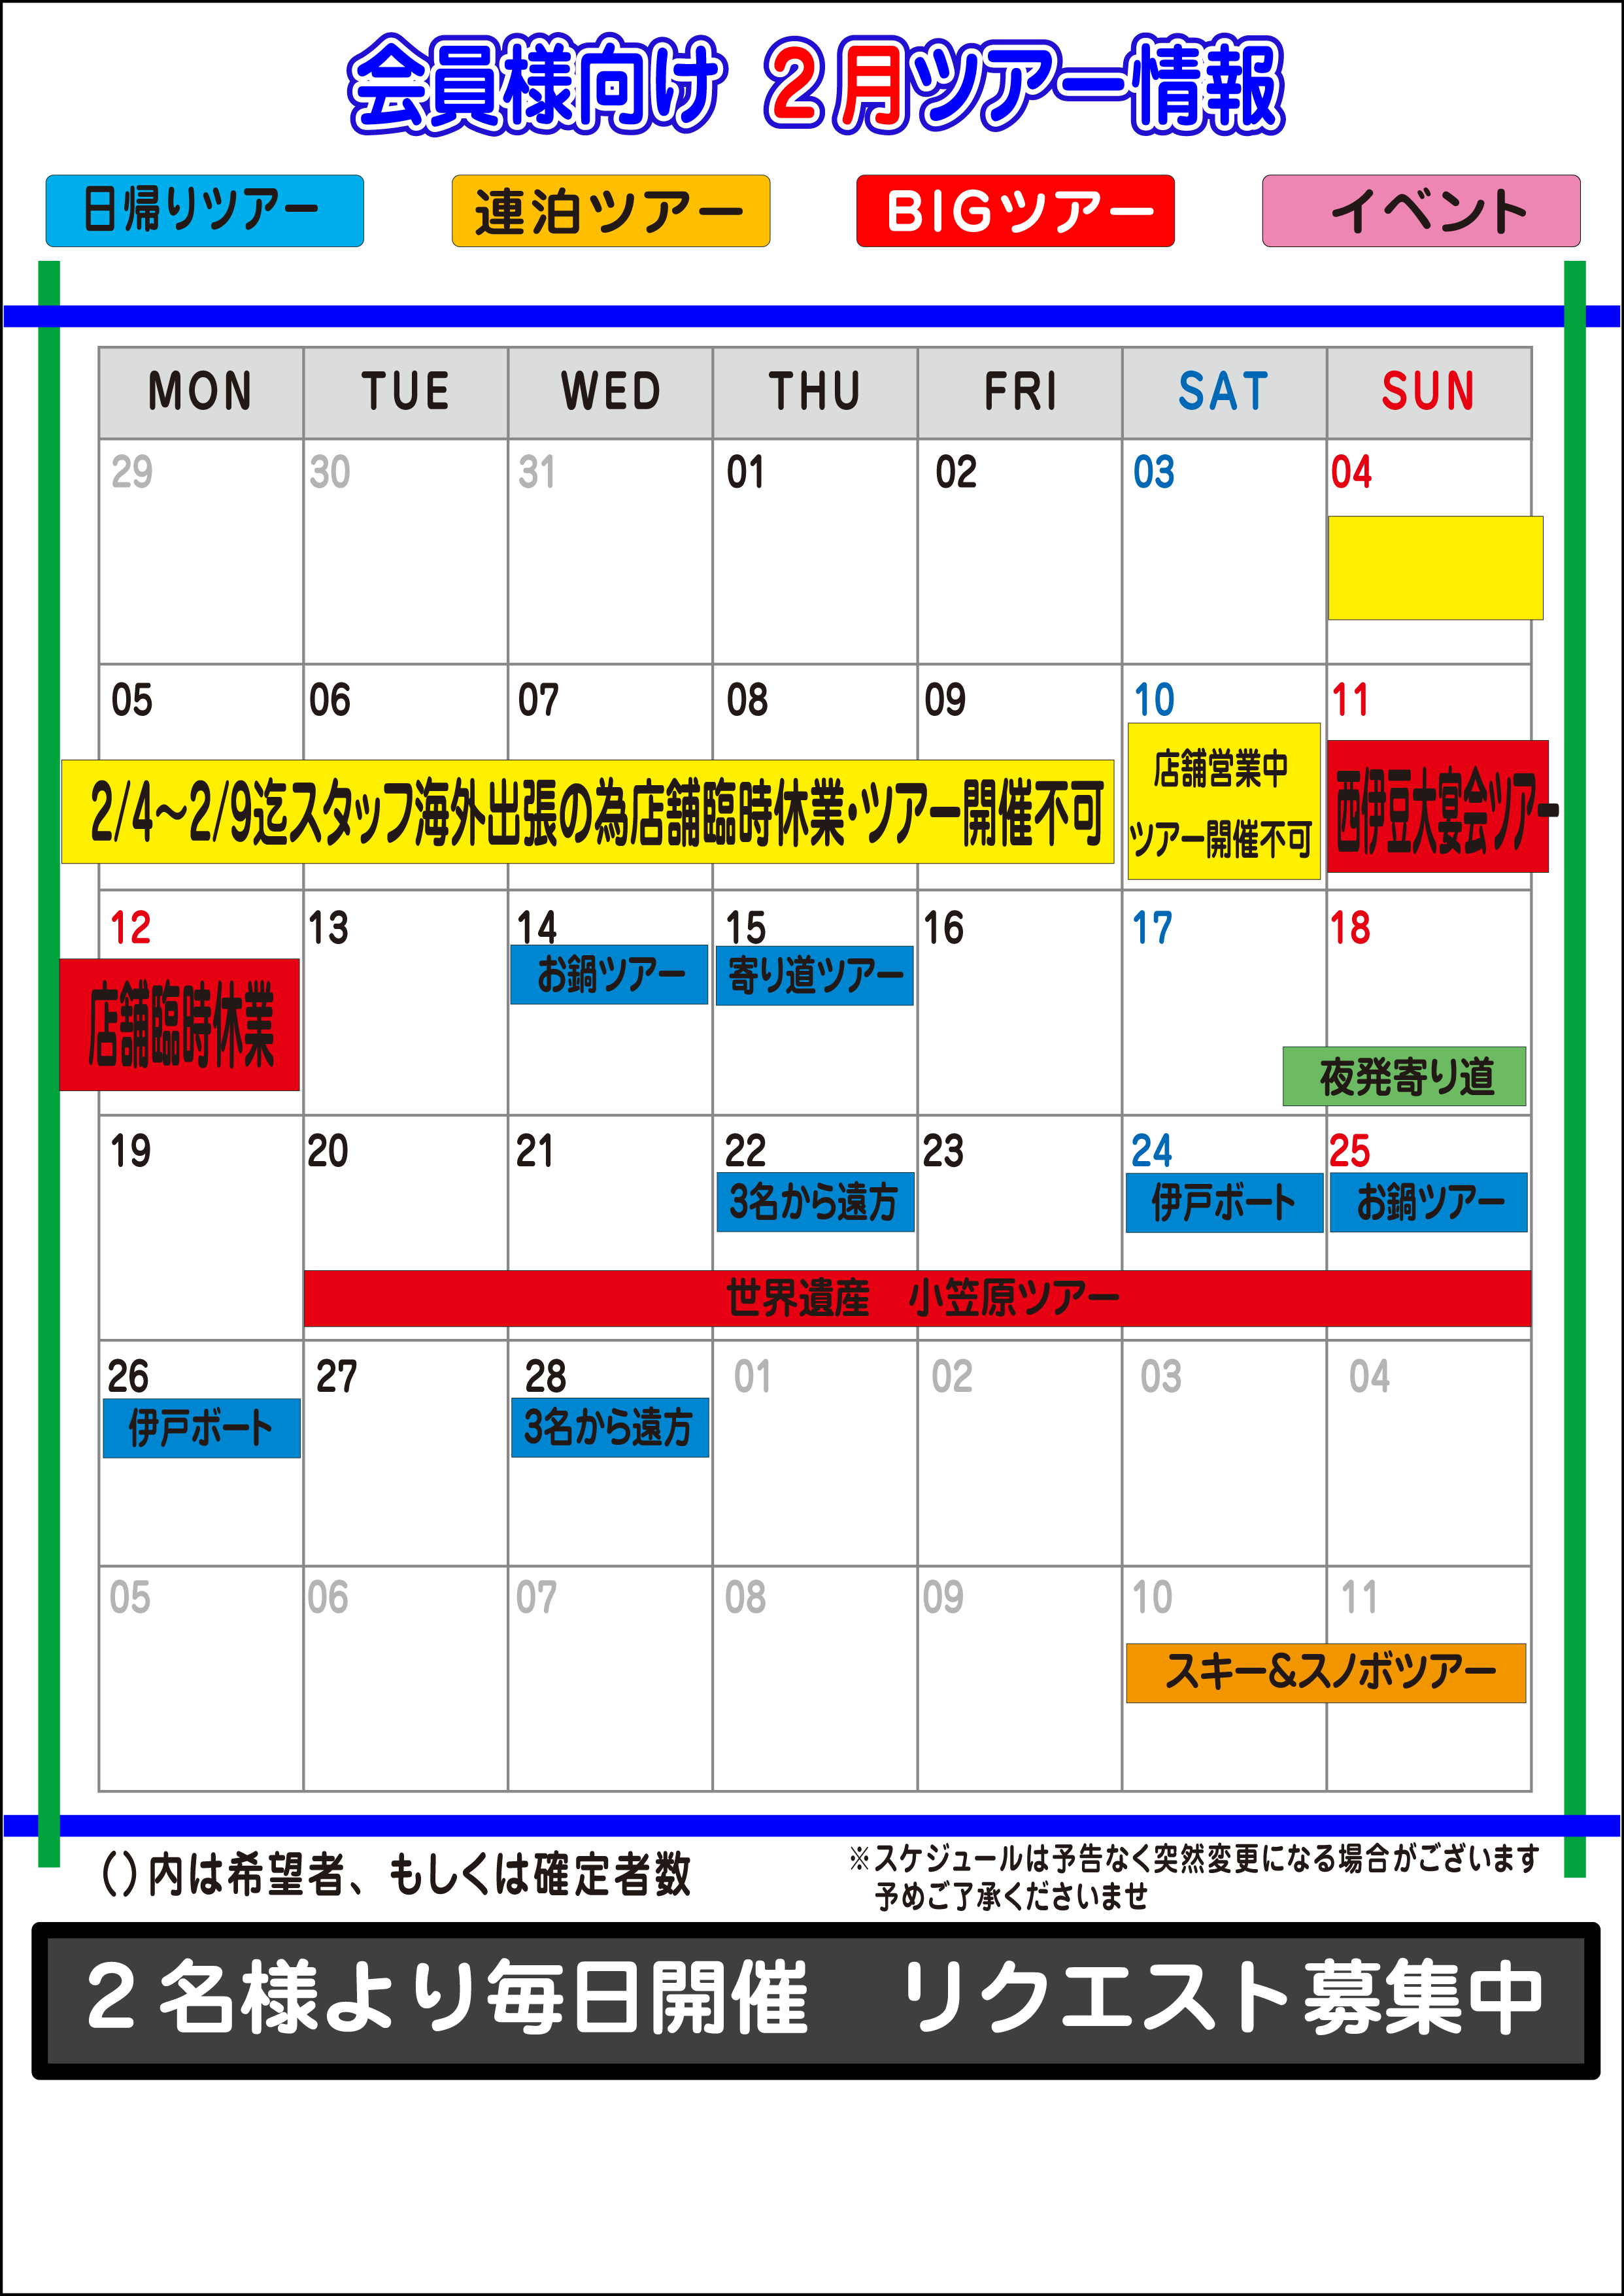 18年2月ツアーカレンダーs2 Club 東京店